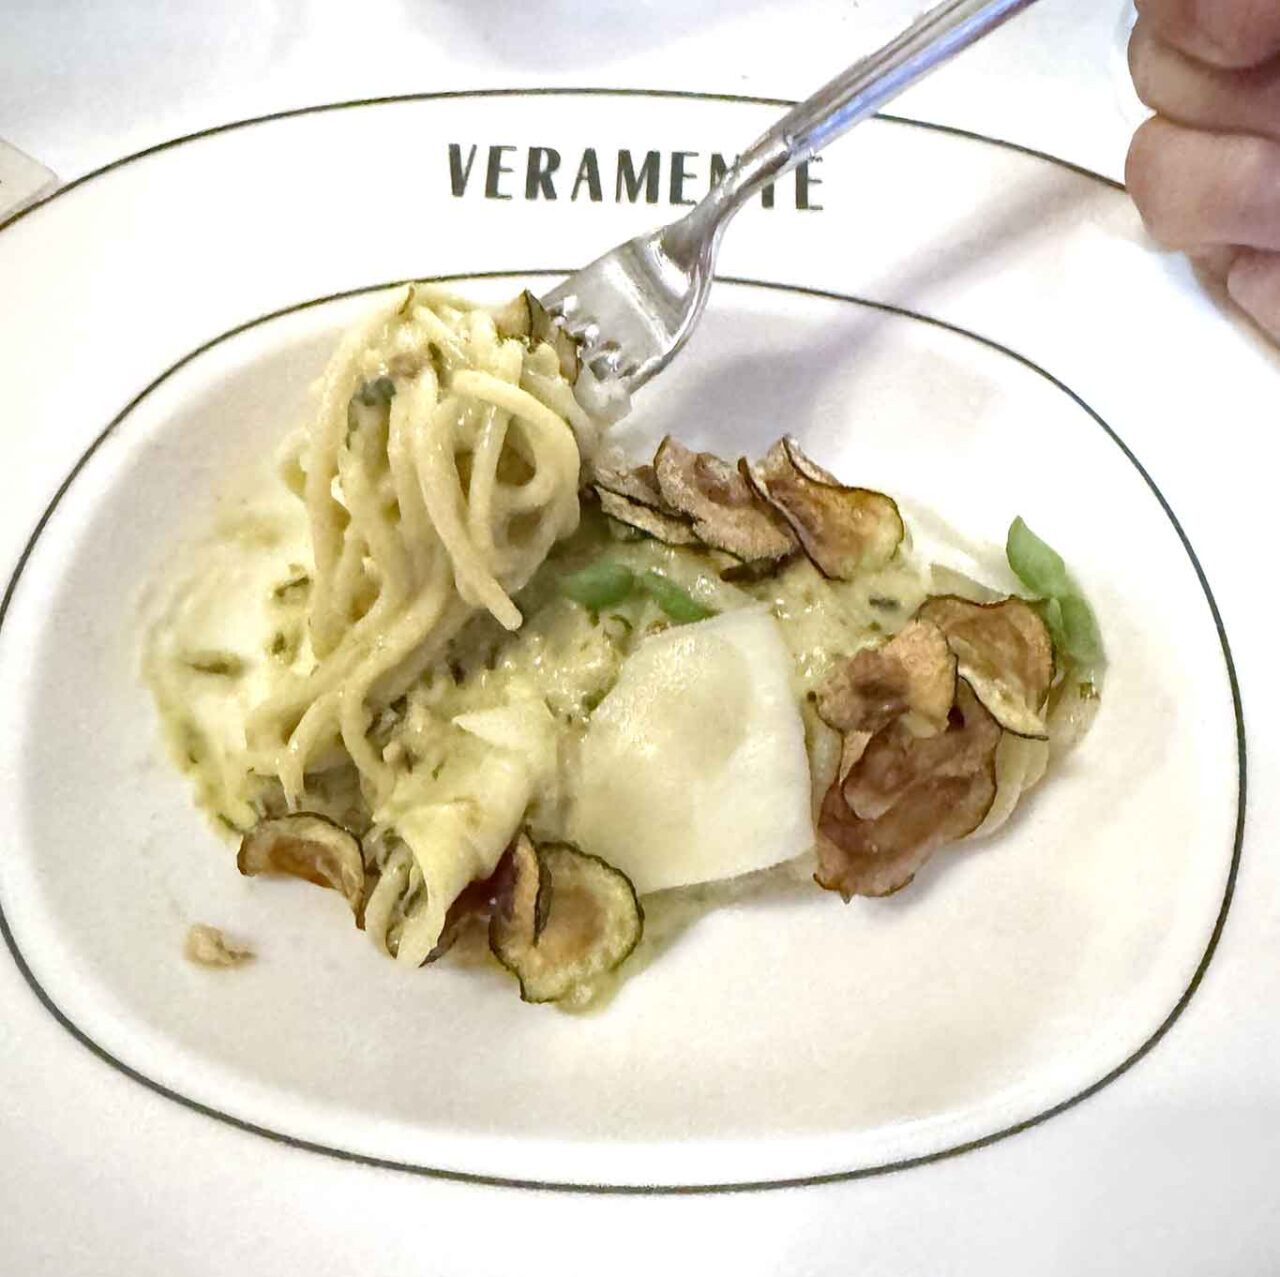 gli spaghetti alla Nerano del ristorante di cucina regionale Veramente a Milano 